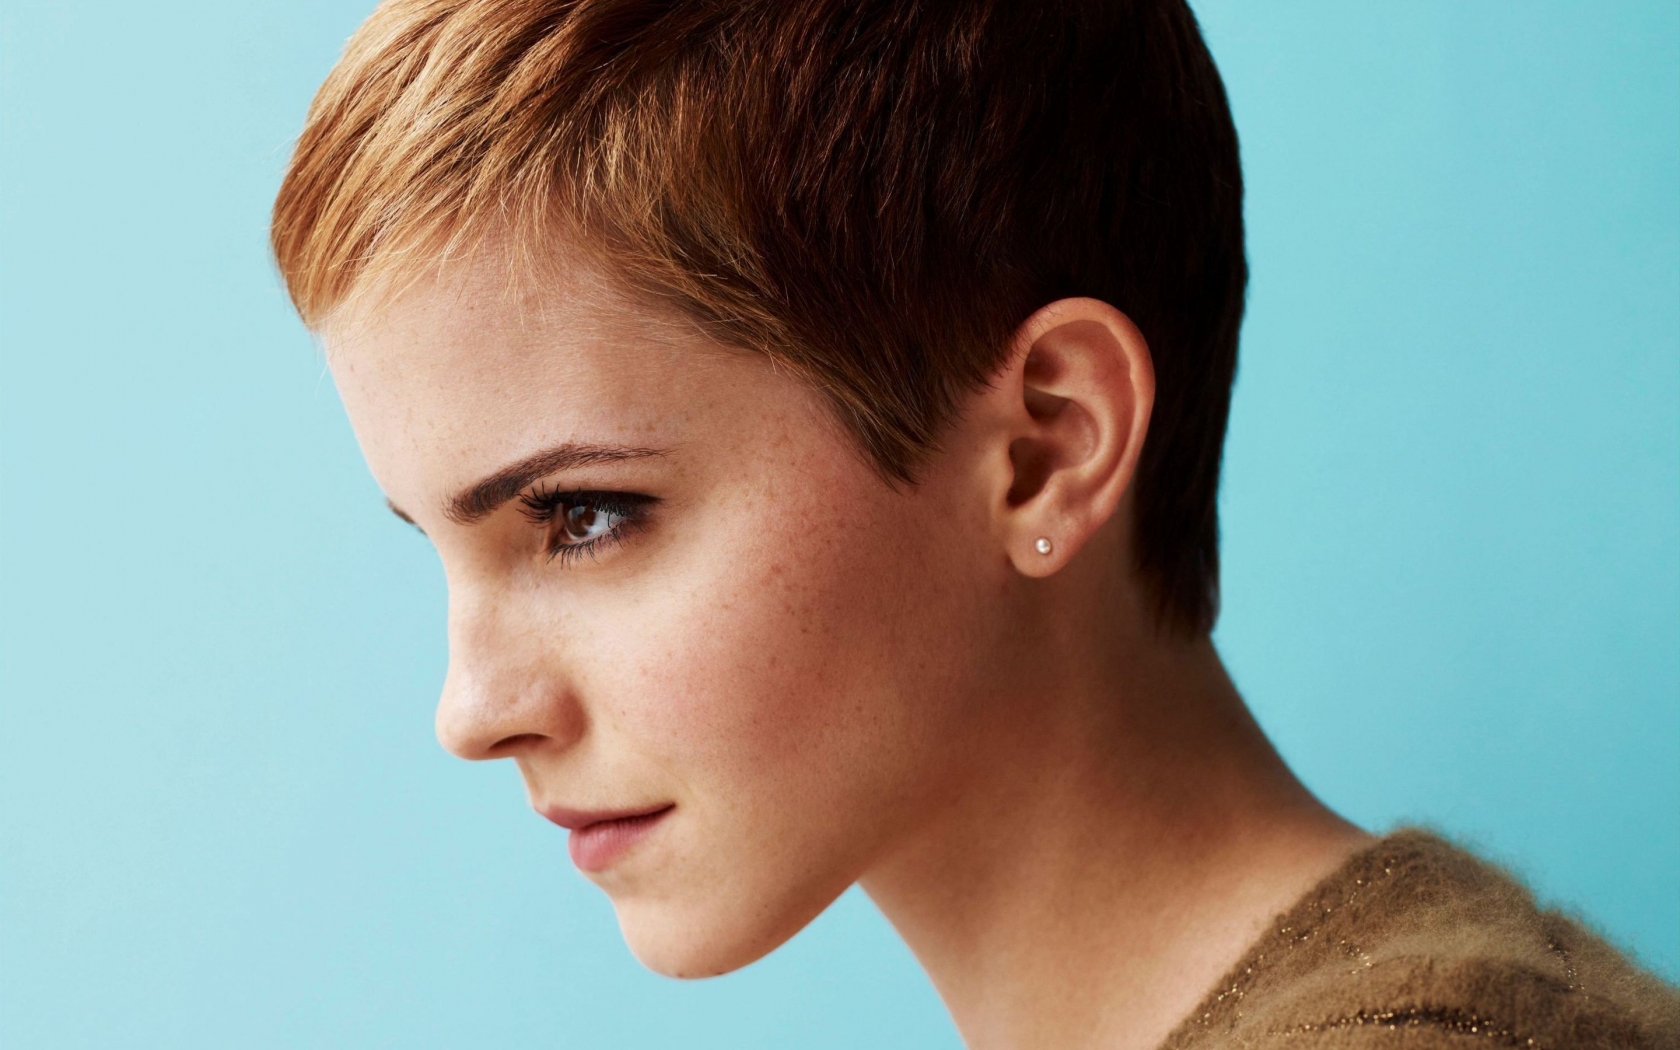 Emma Watson Short Hair for 1680 x 1050 widescreen resolution